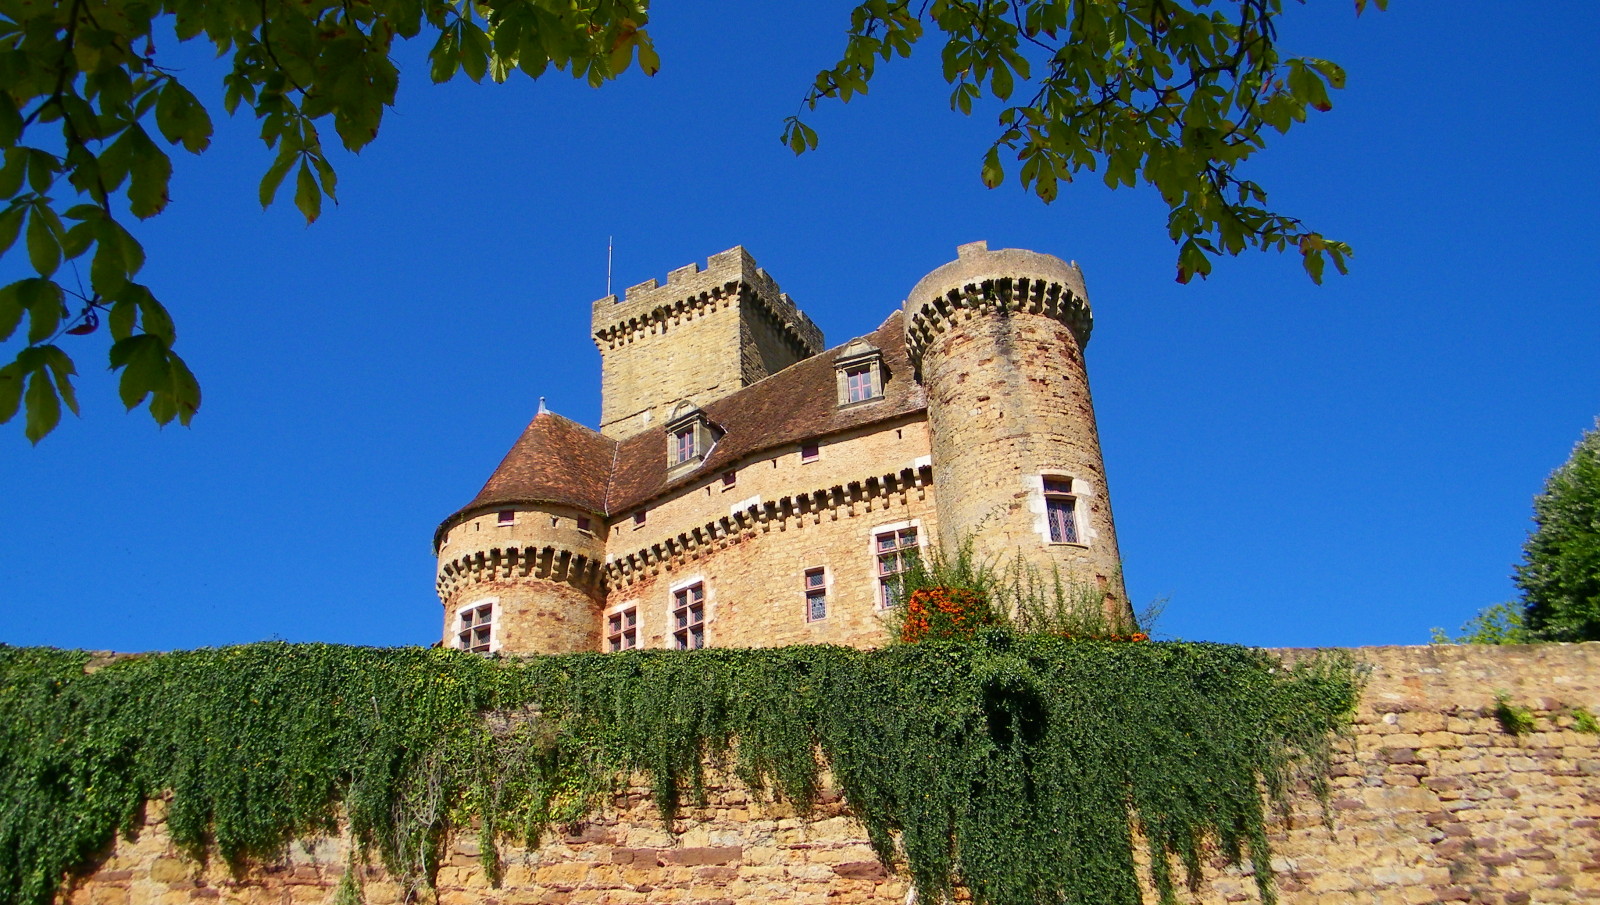 HQ Château De Castenau-Bretenoux Wallpapers | File 518.69Kb